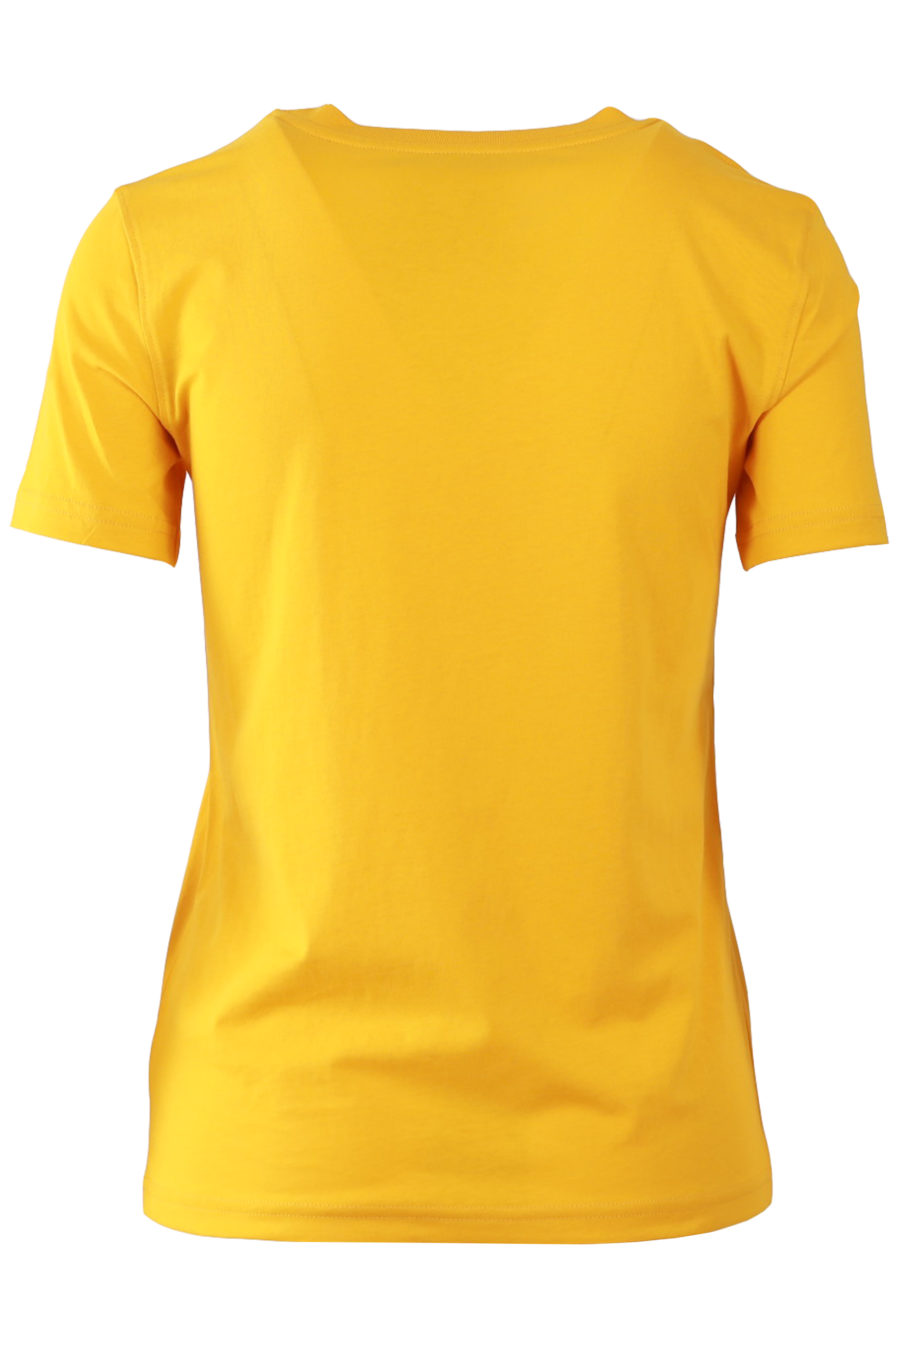 Camiseta de color naranja con logo negro - 8253b31ebeb851a6858ed9619311972fcaf0c69e